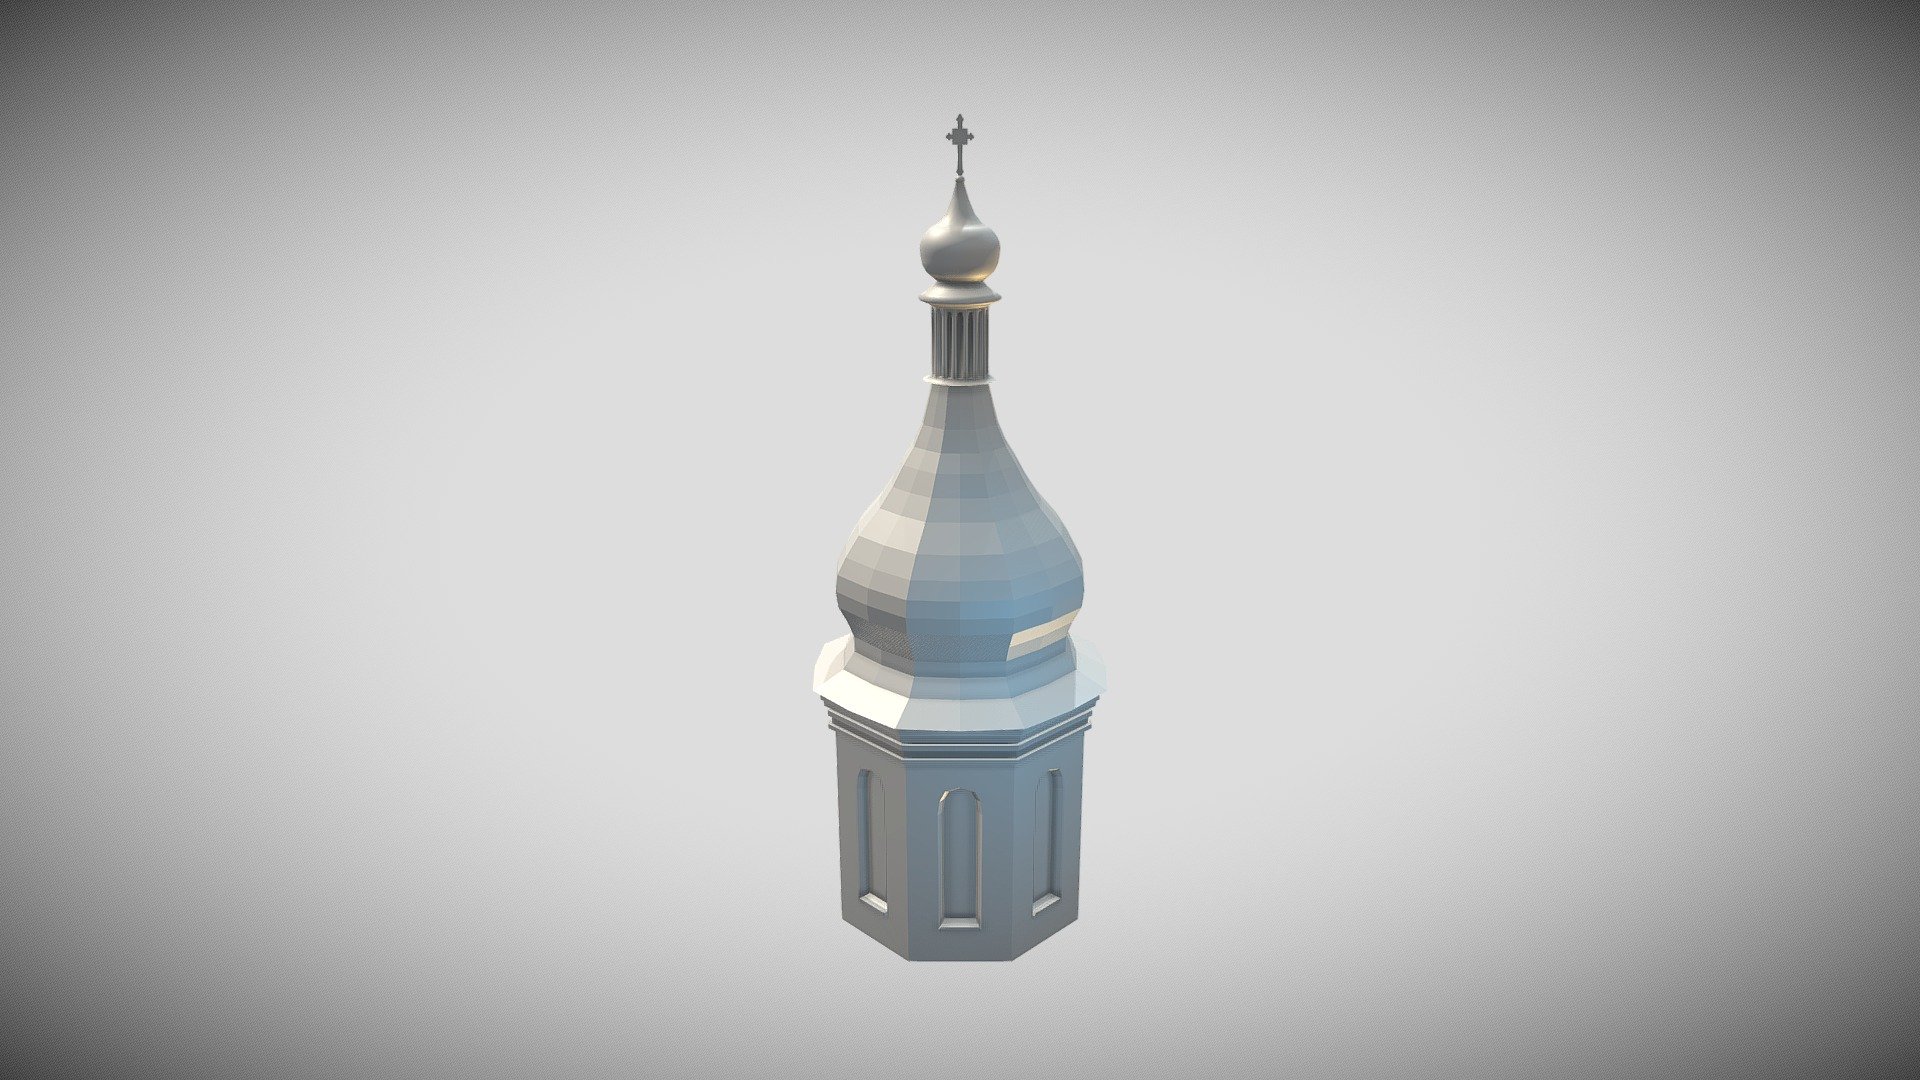 saint-sophiacathedral kiev Tower